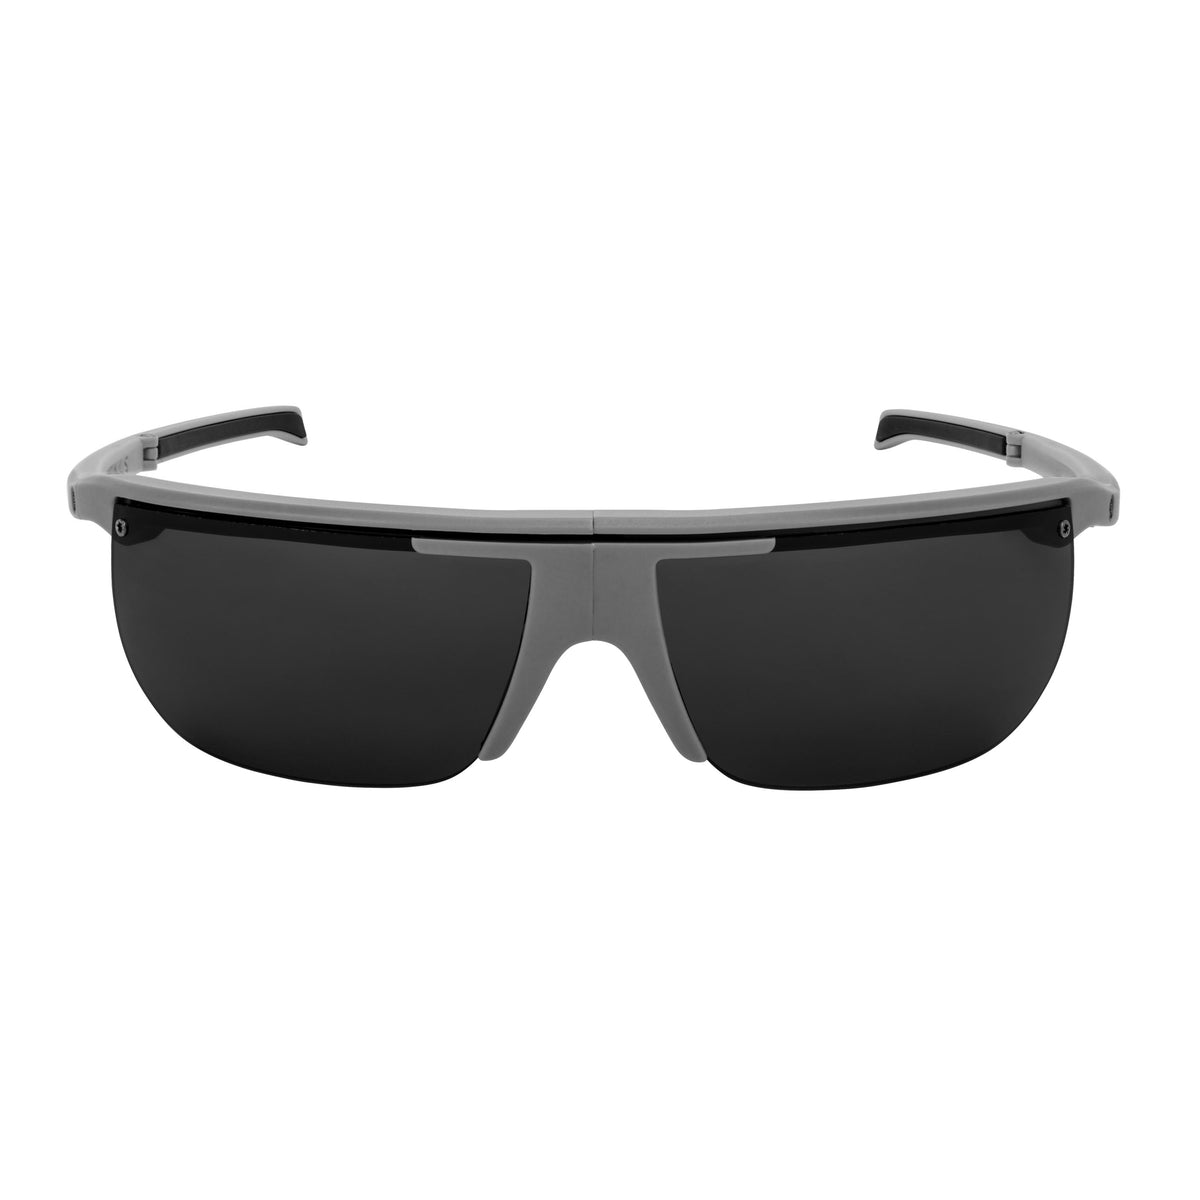 Popticals, Premium Compact Sunglasses, PopArt, 010030-GMGP, Polarized Sunglasses, Matte Gray Frame, Gray Lenses, Front Tilt View